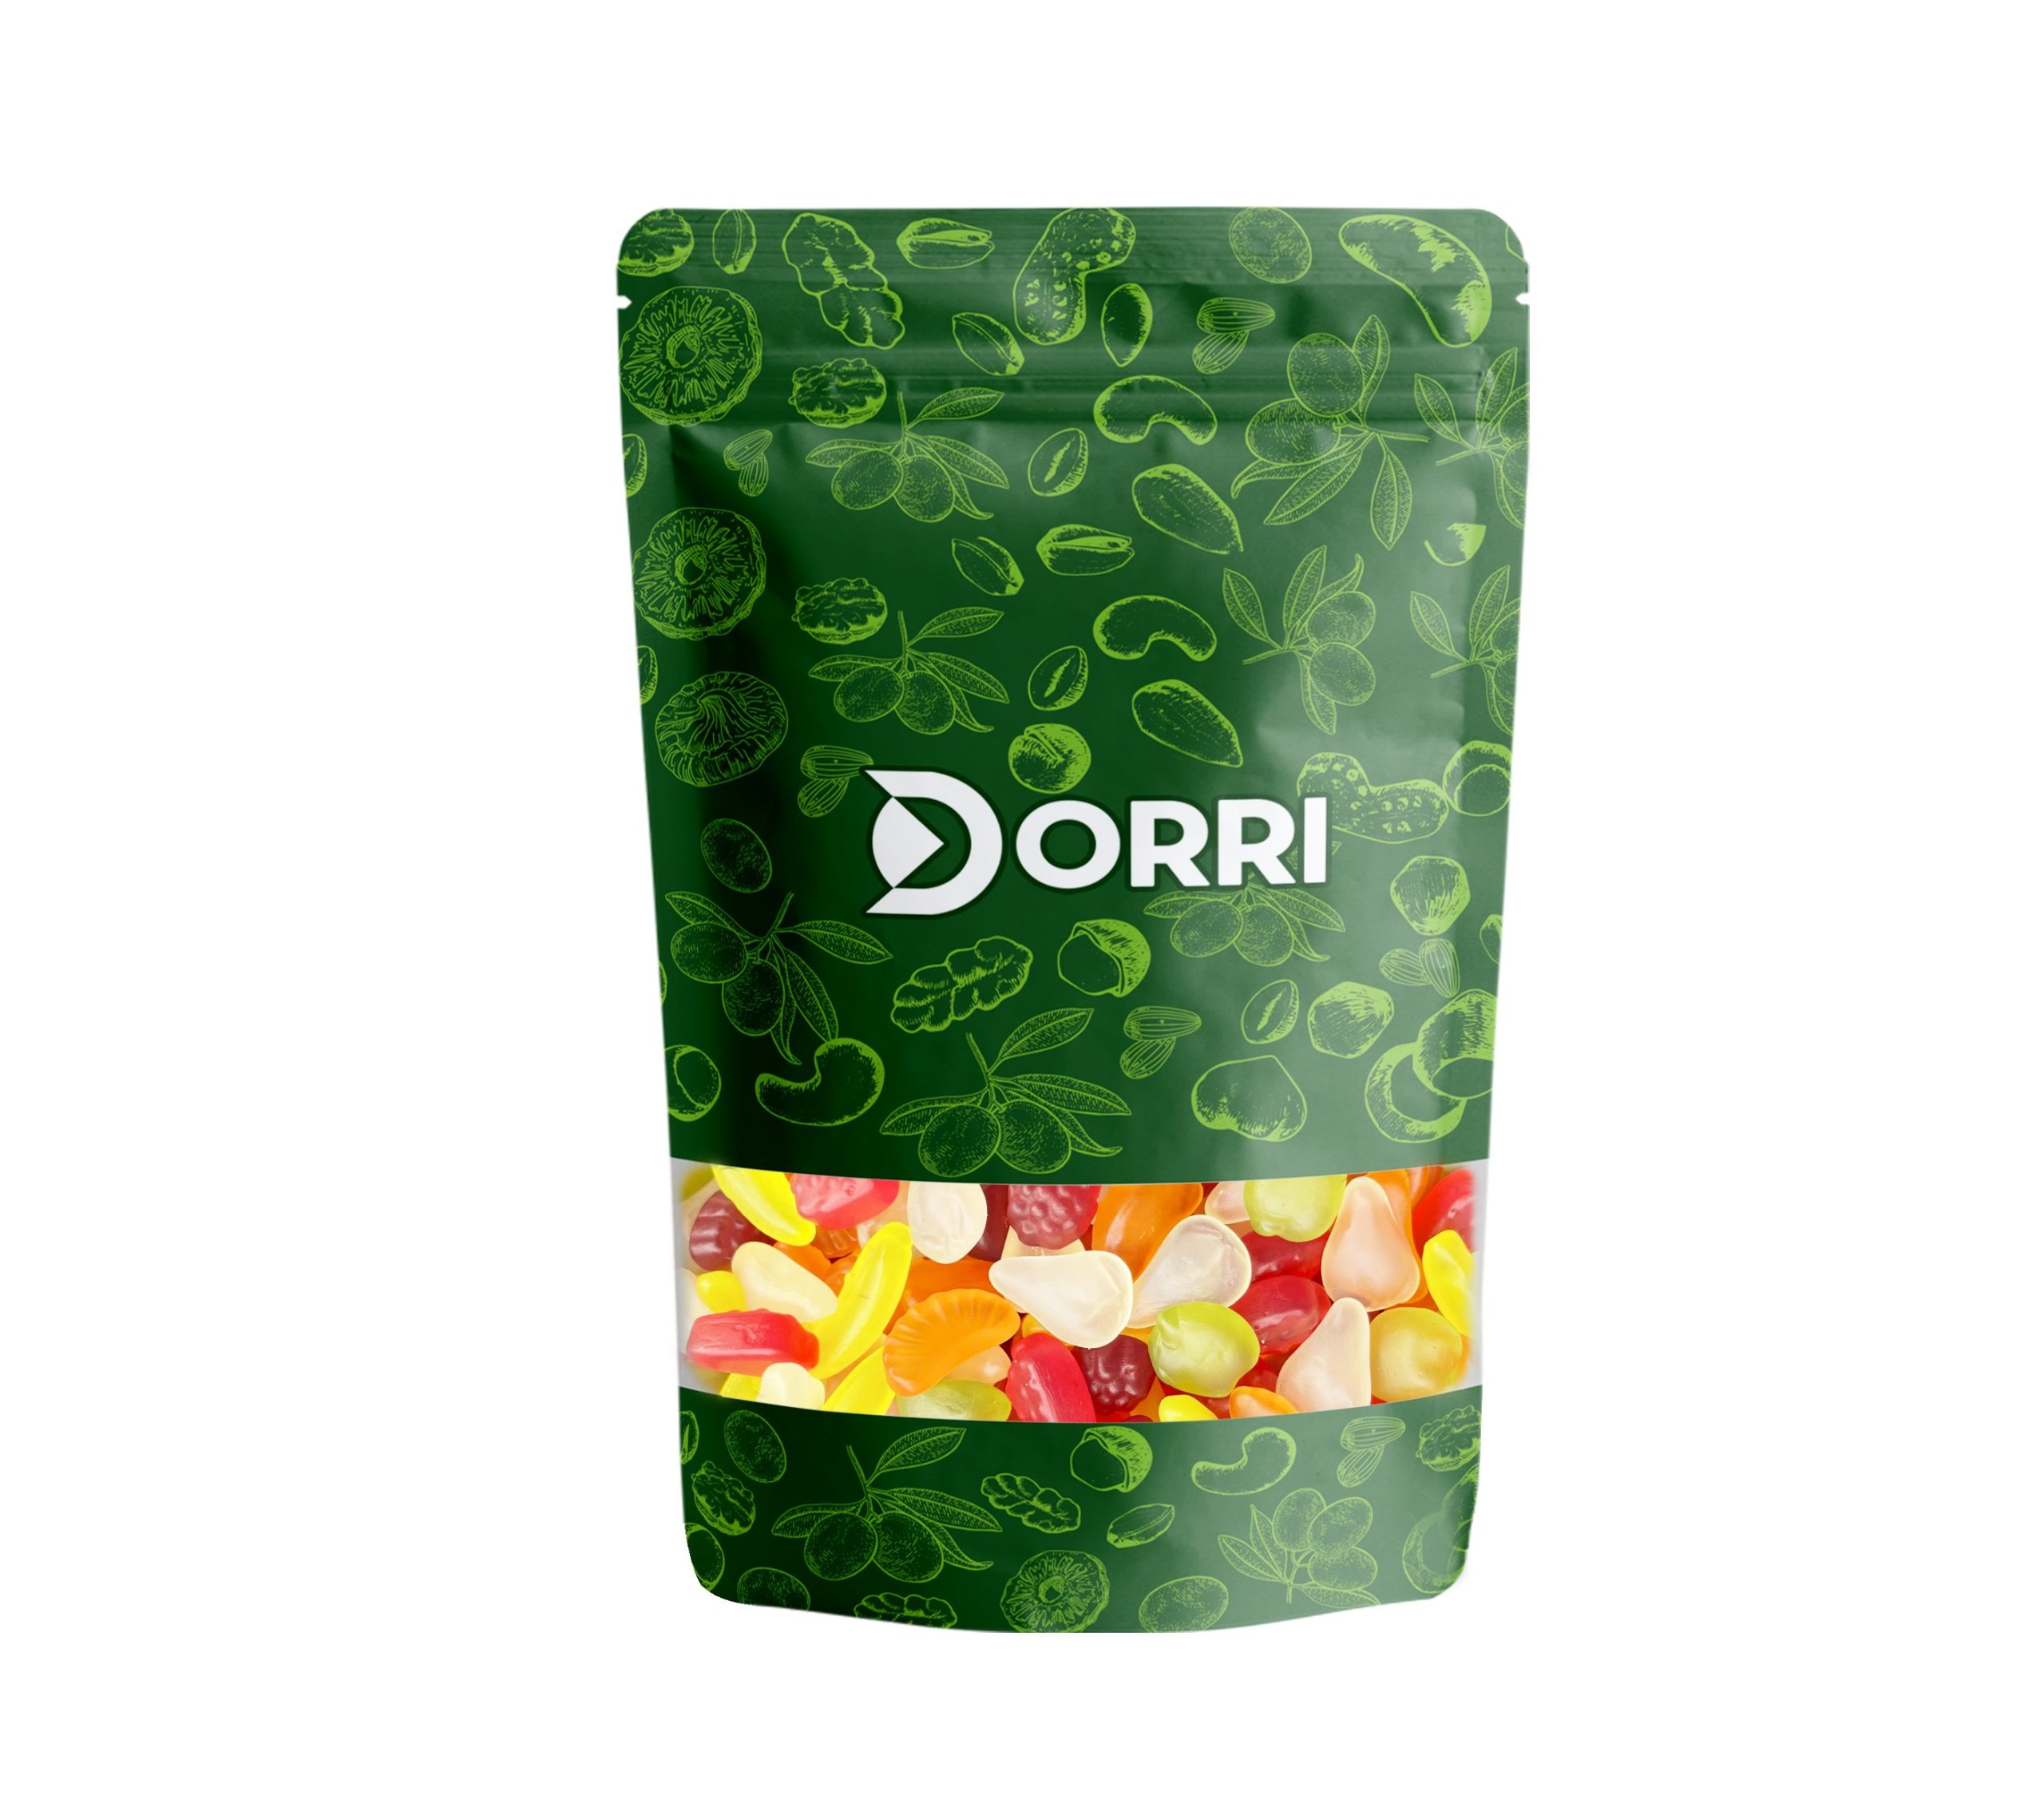 Dorri - Fruit Jellies